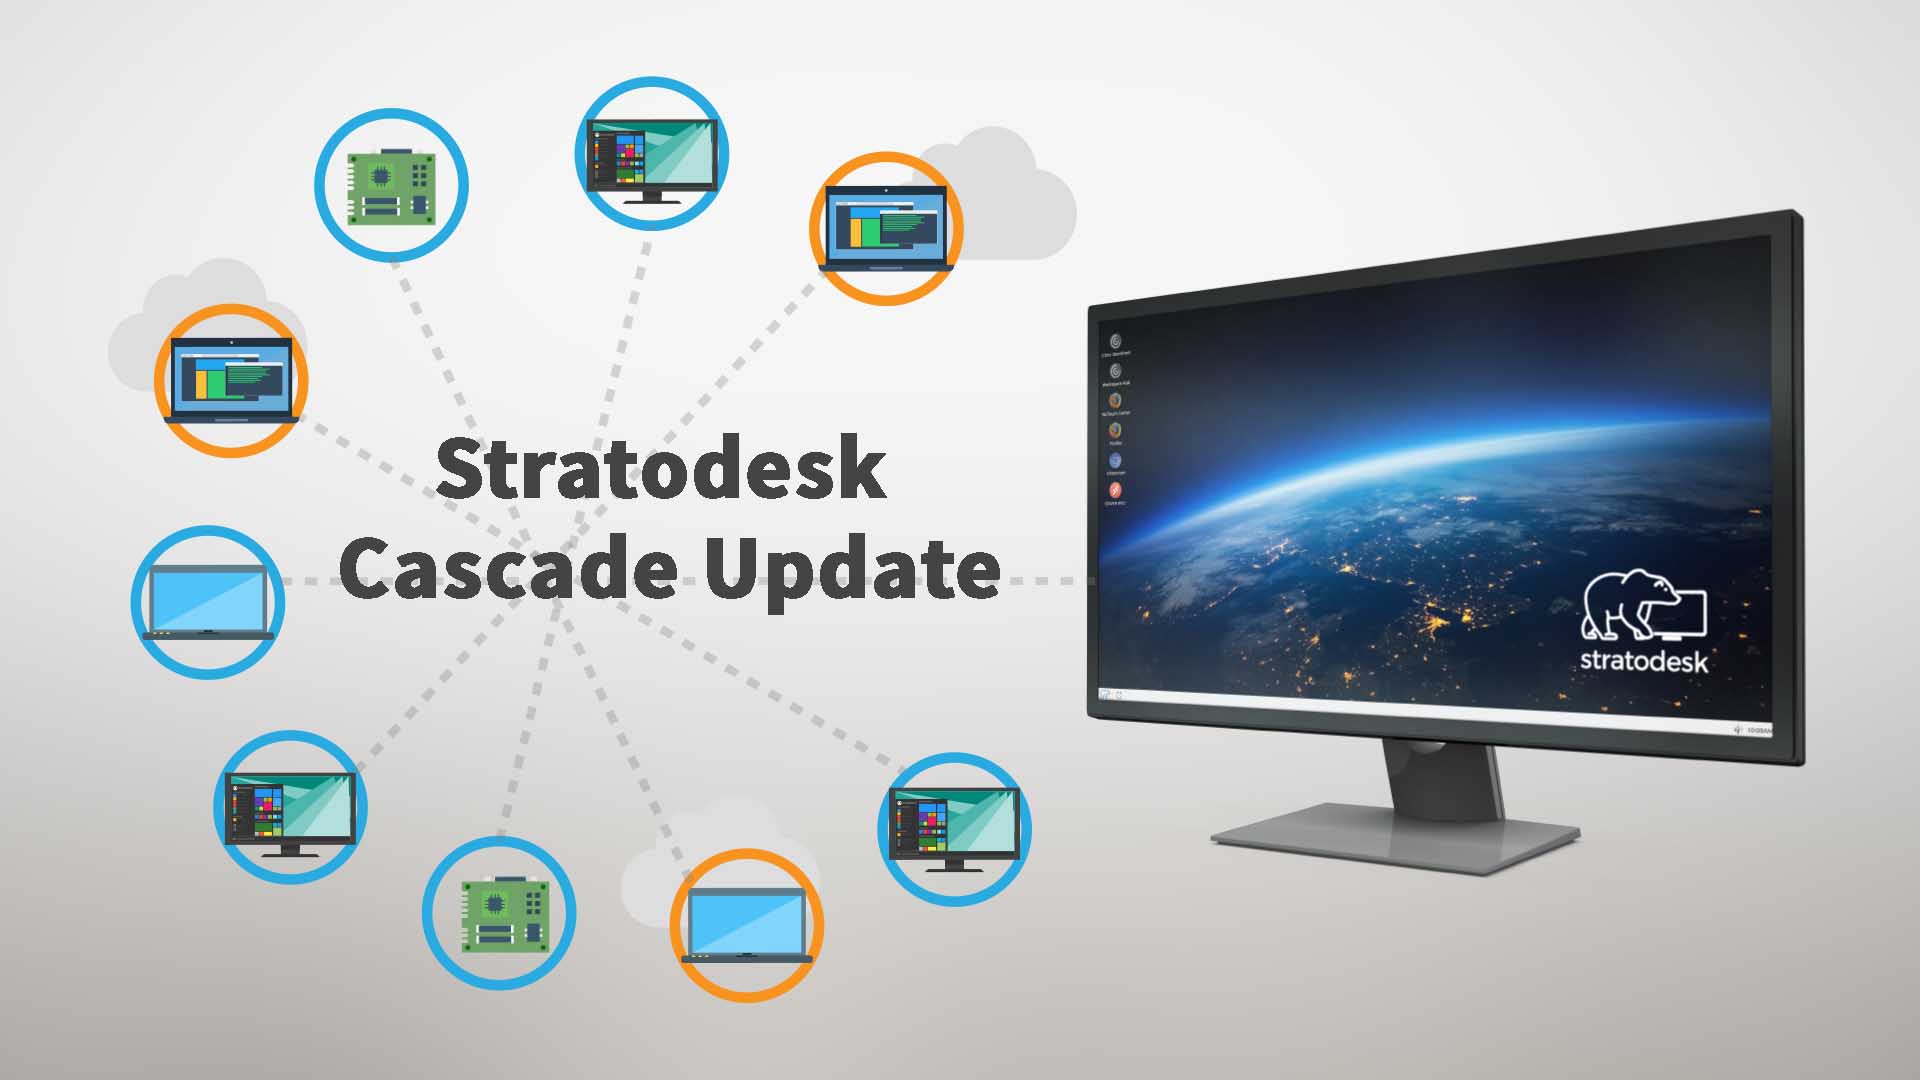 Stratodesk Peer-to-Peer “Cascade” Update